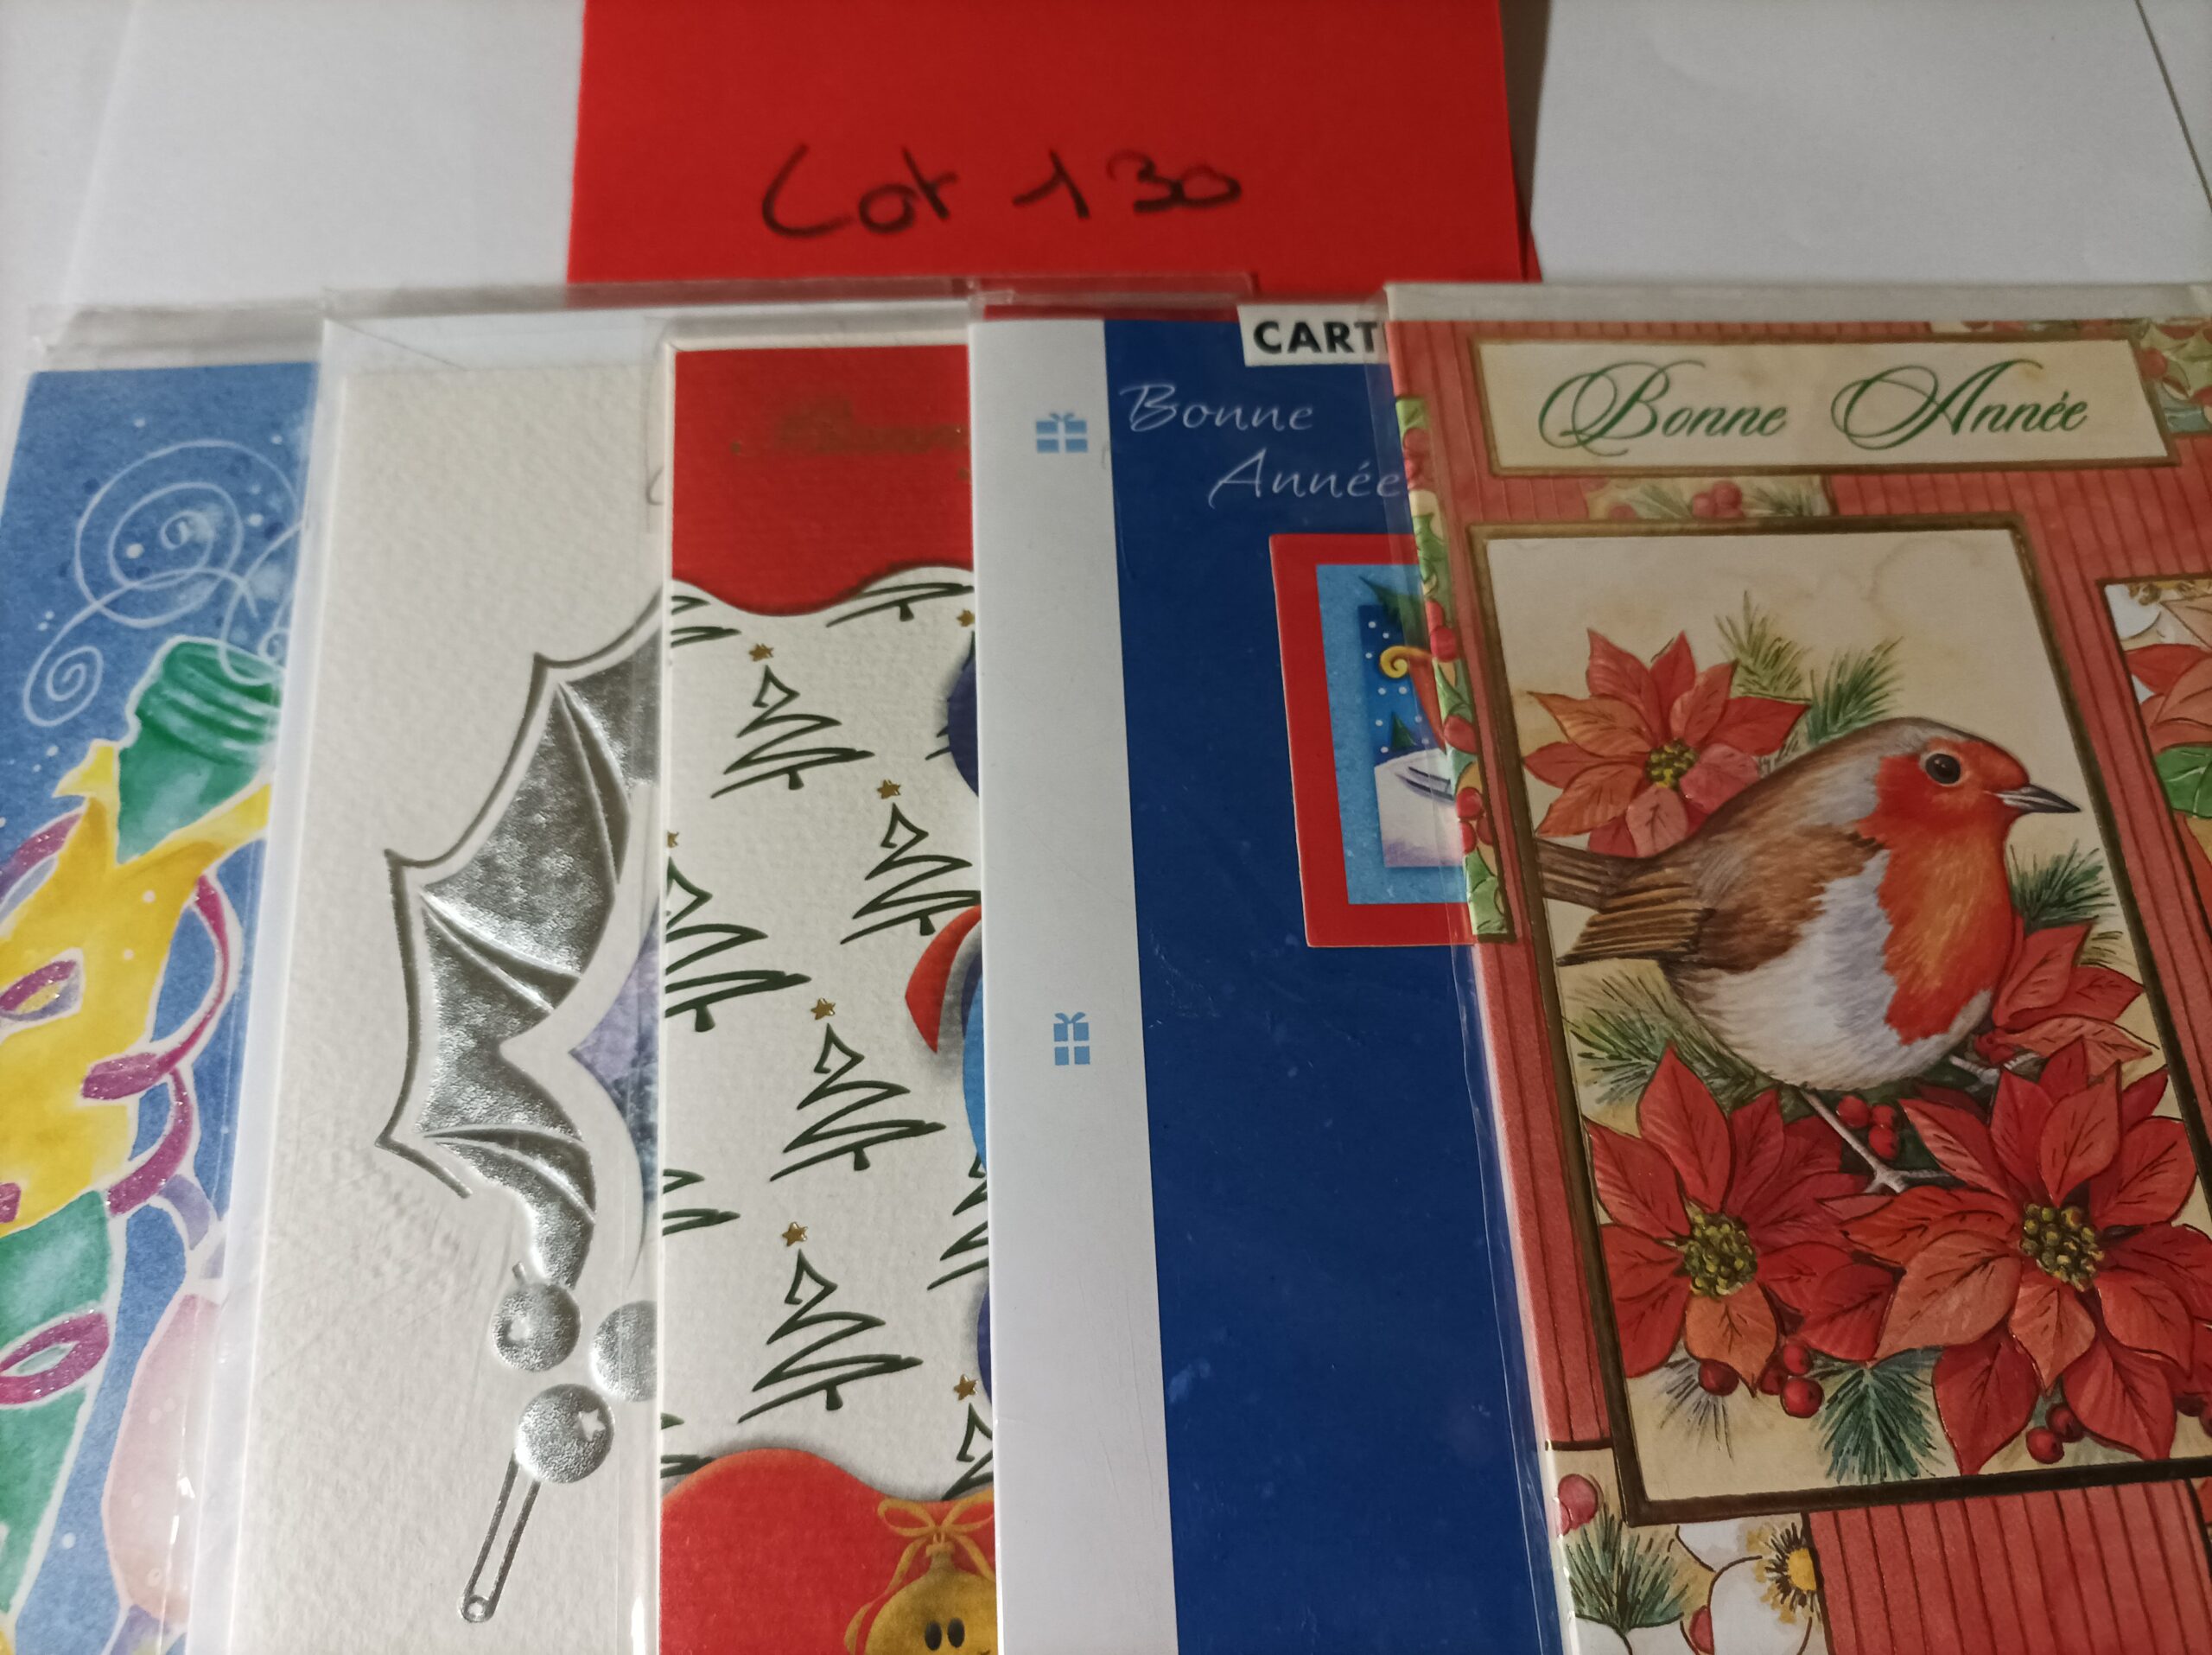 Lot de 5 cartes postales + enveloppes bonne année (lot 130)